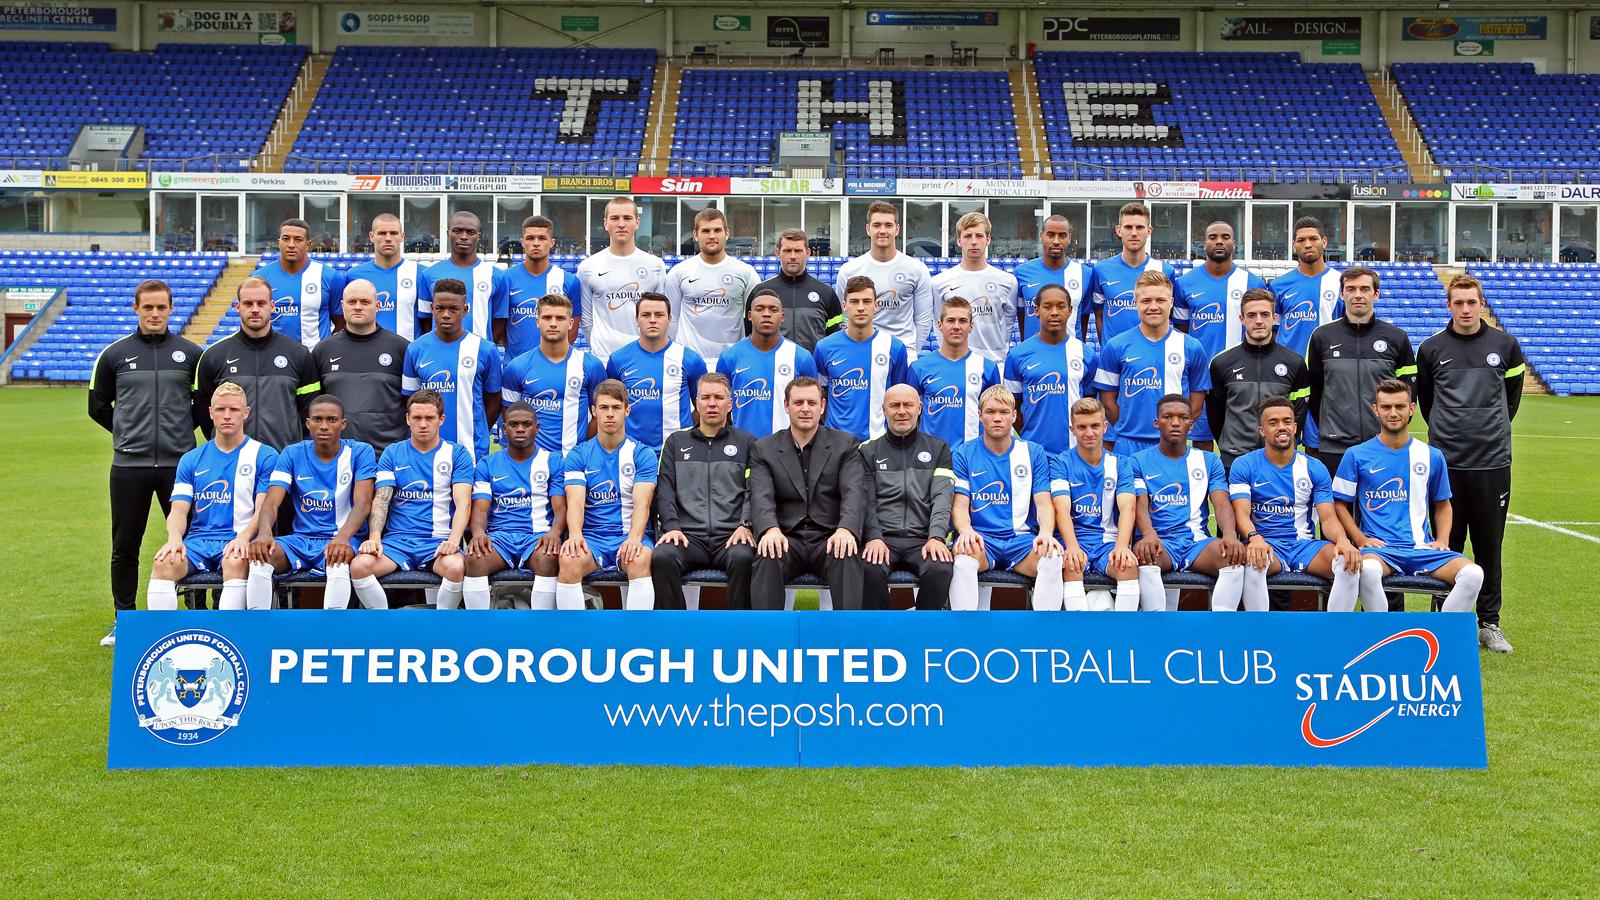 Peterborough United Football Club – Wikipédia, a enciclopédia livre